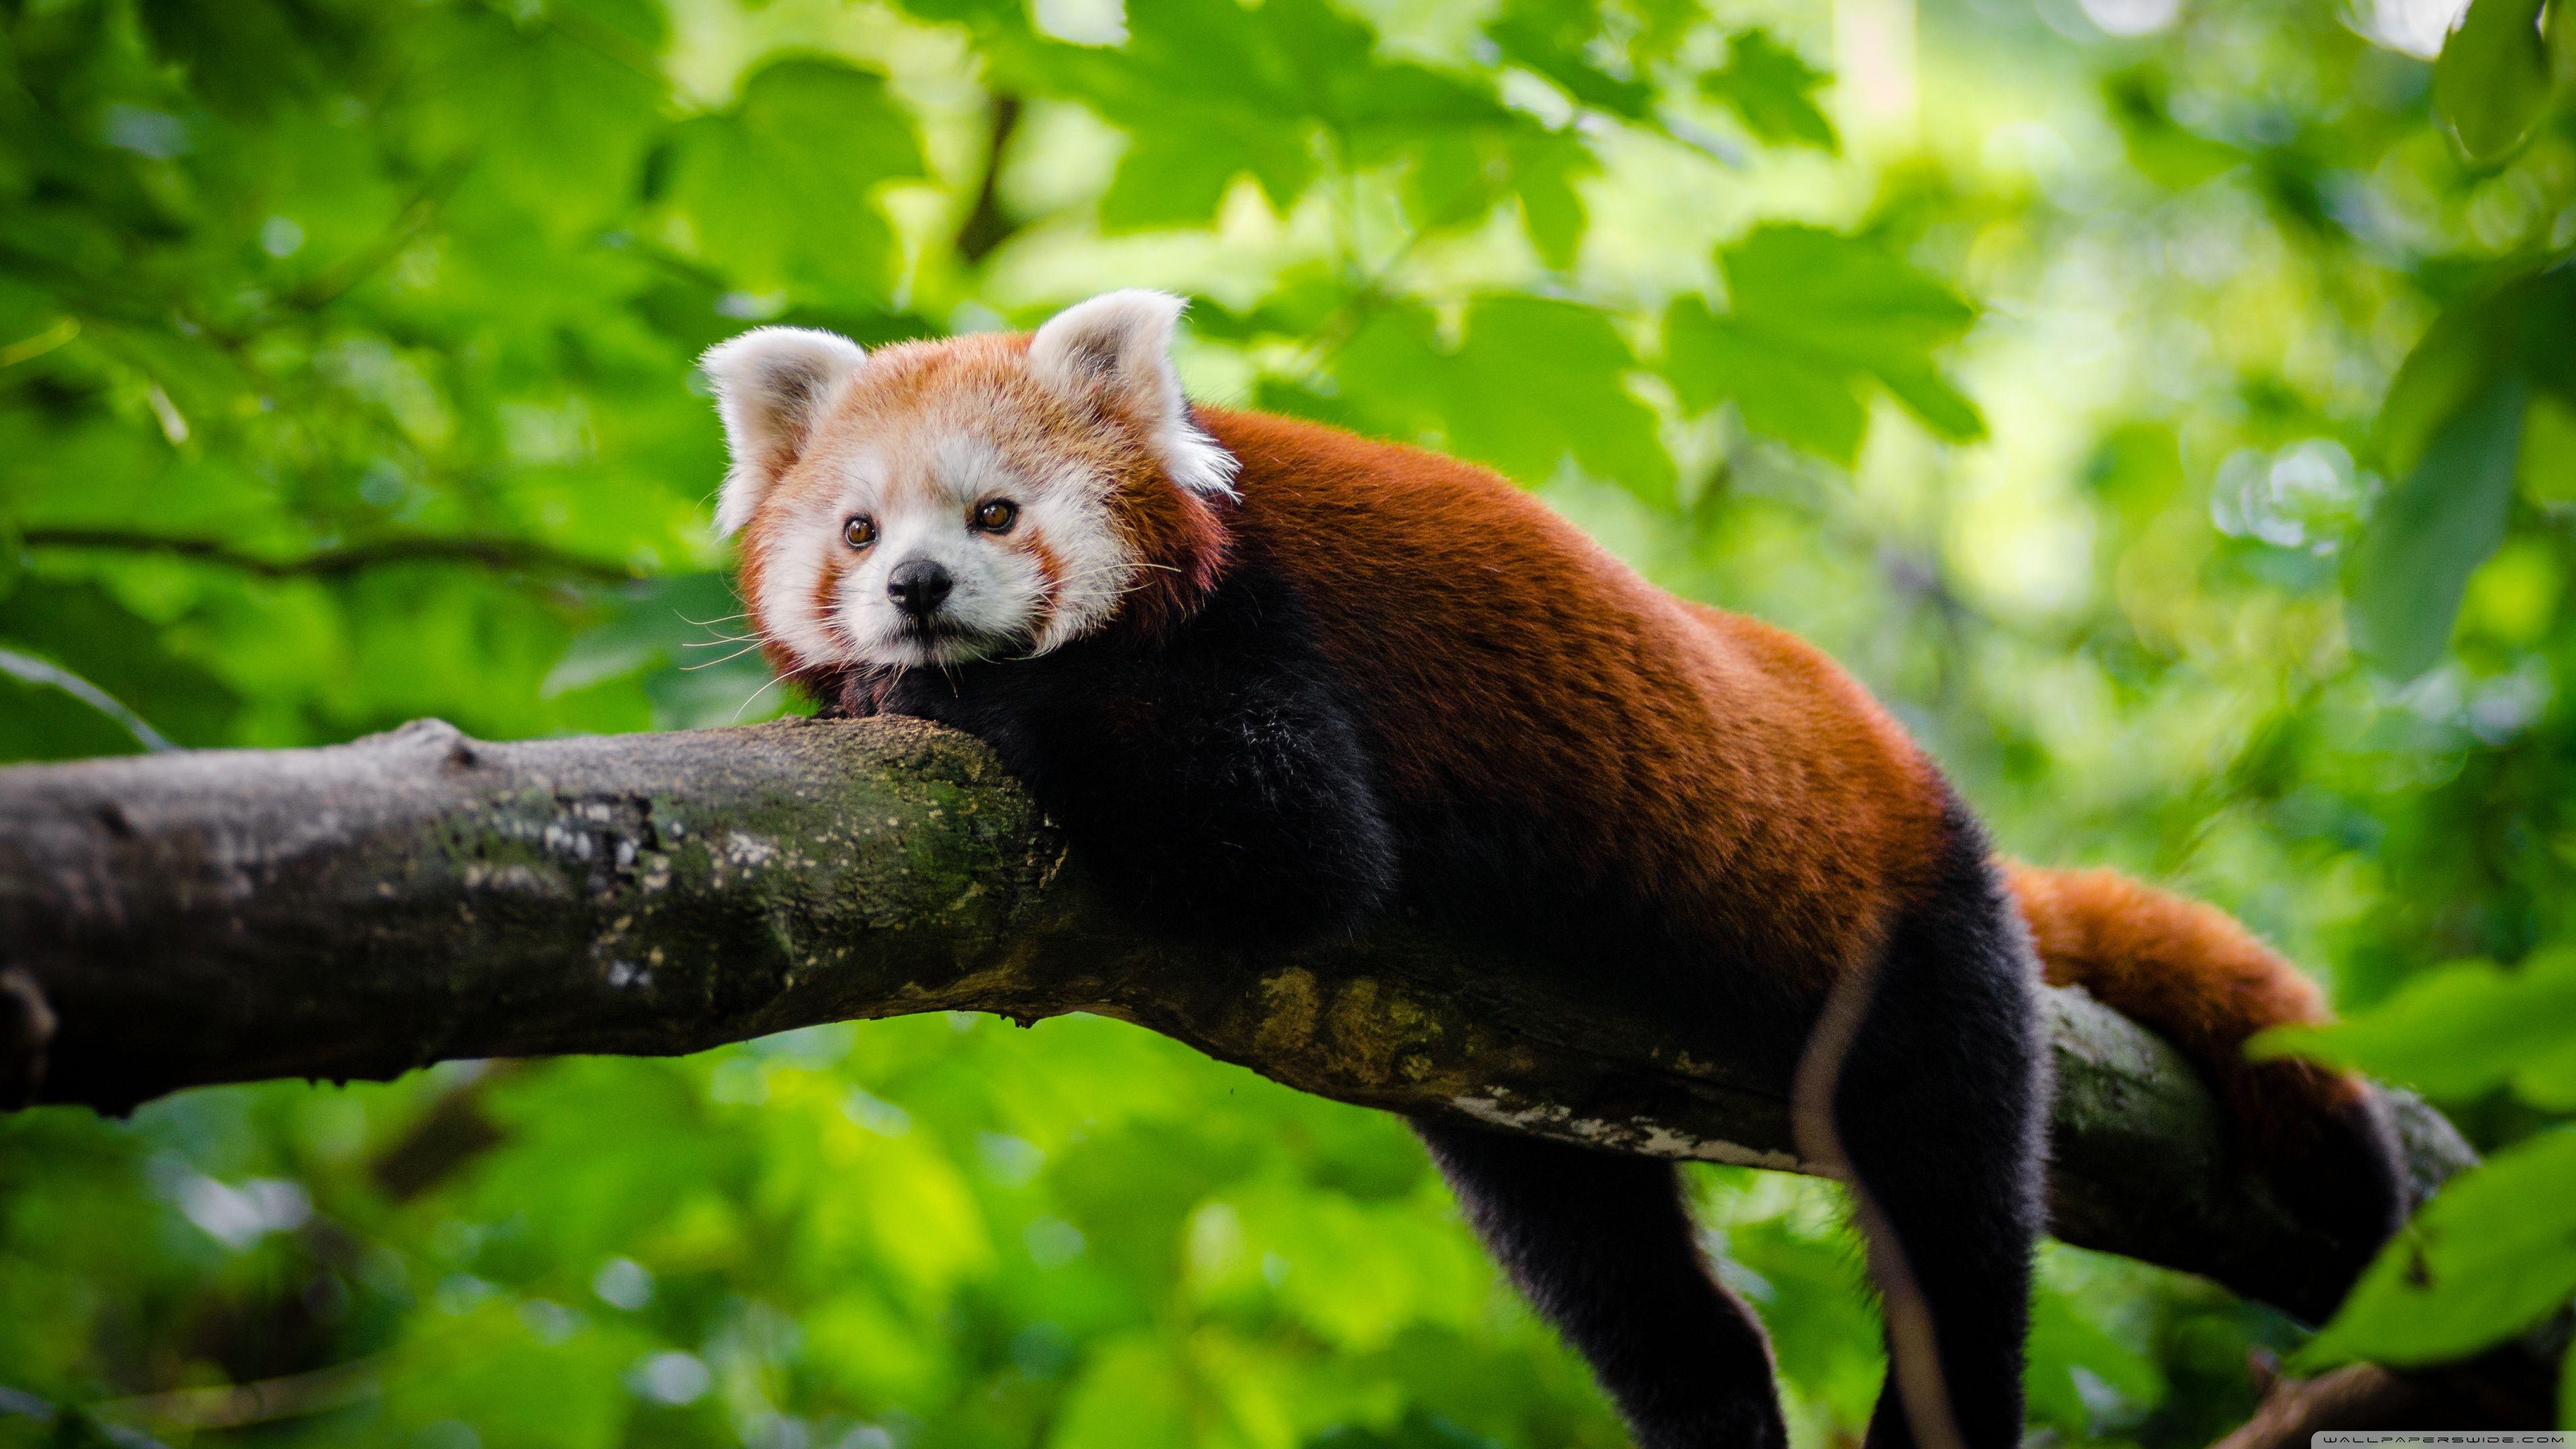 Download Cute Red Panda HD Wallpaper. Animales, 4k uhd